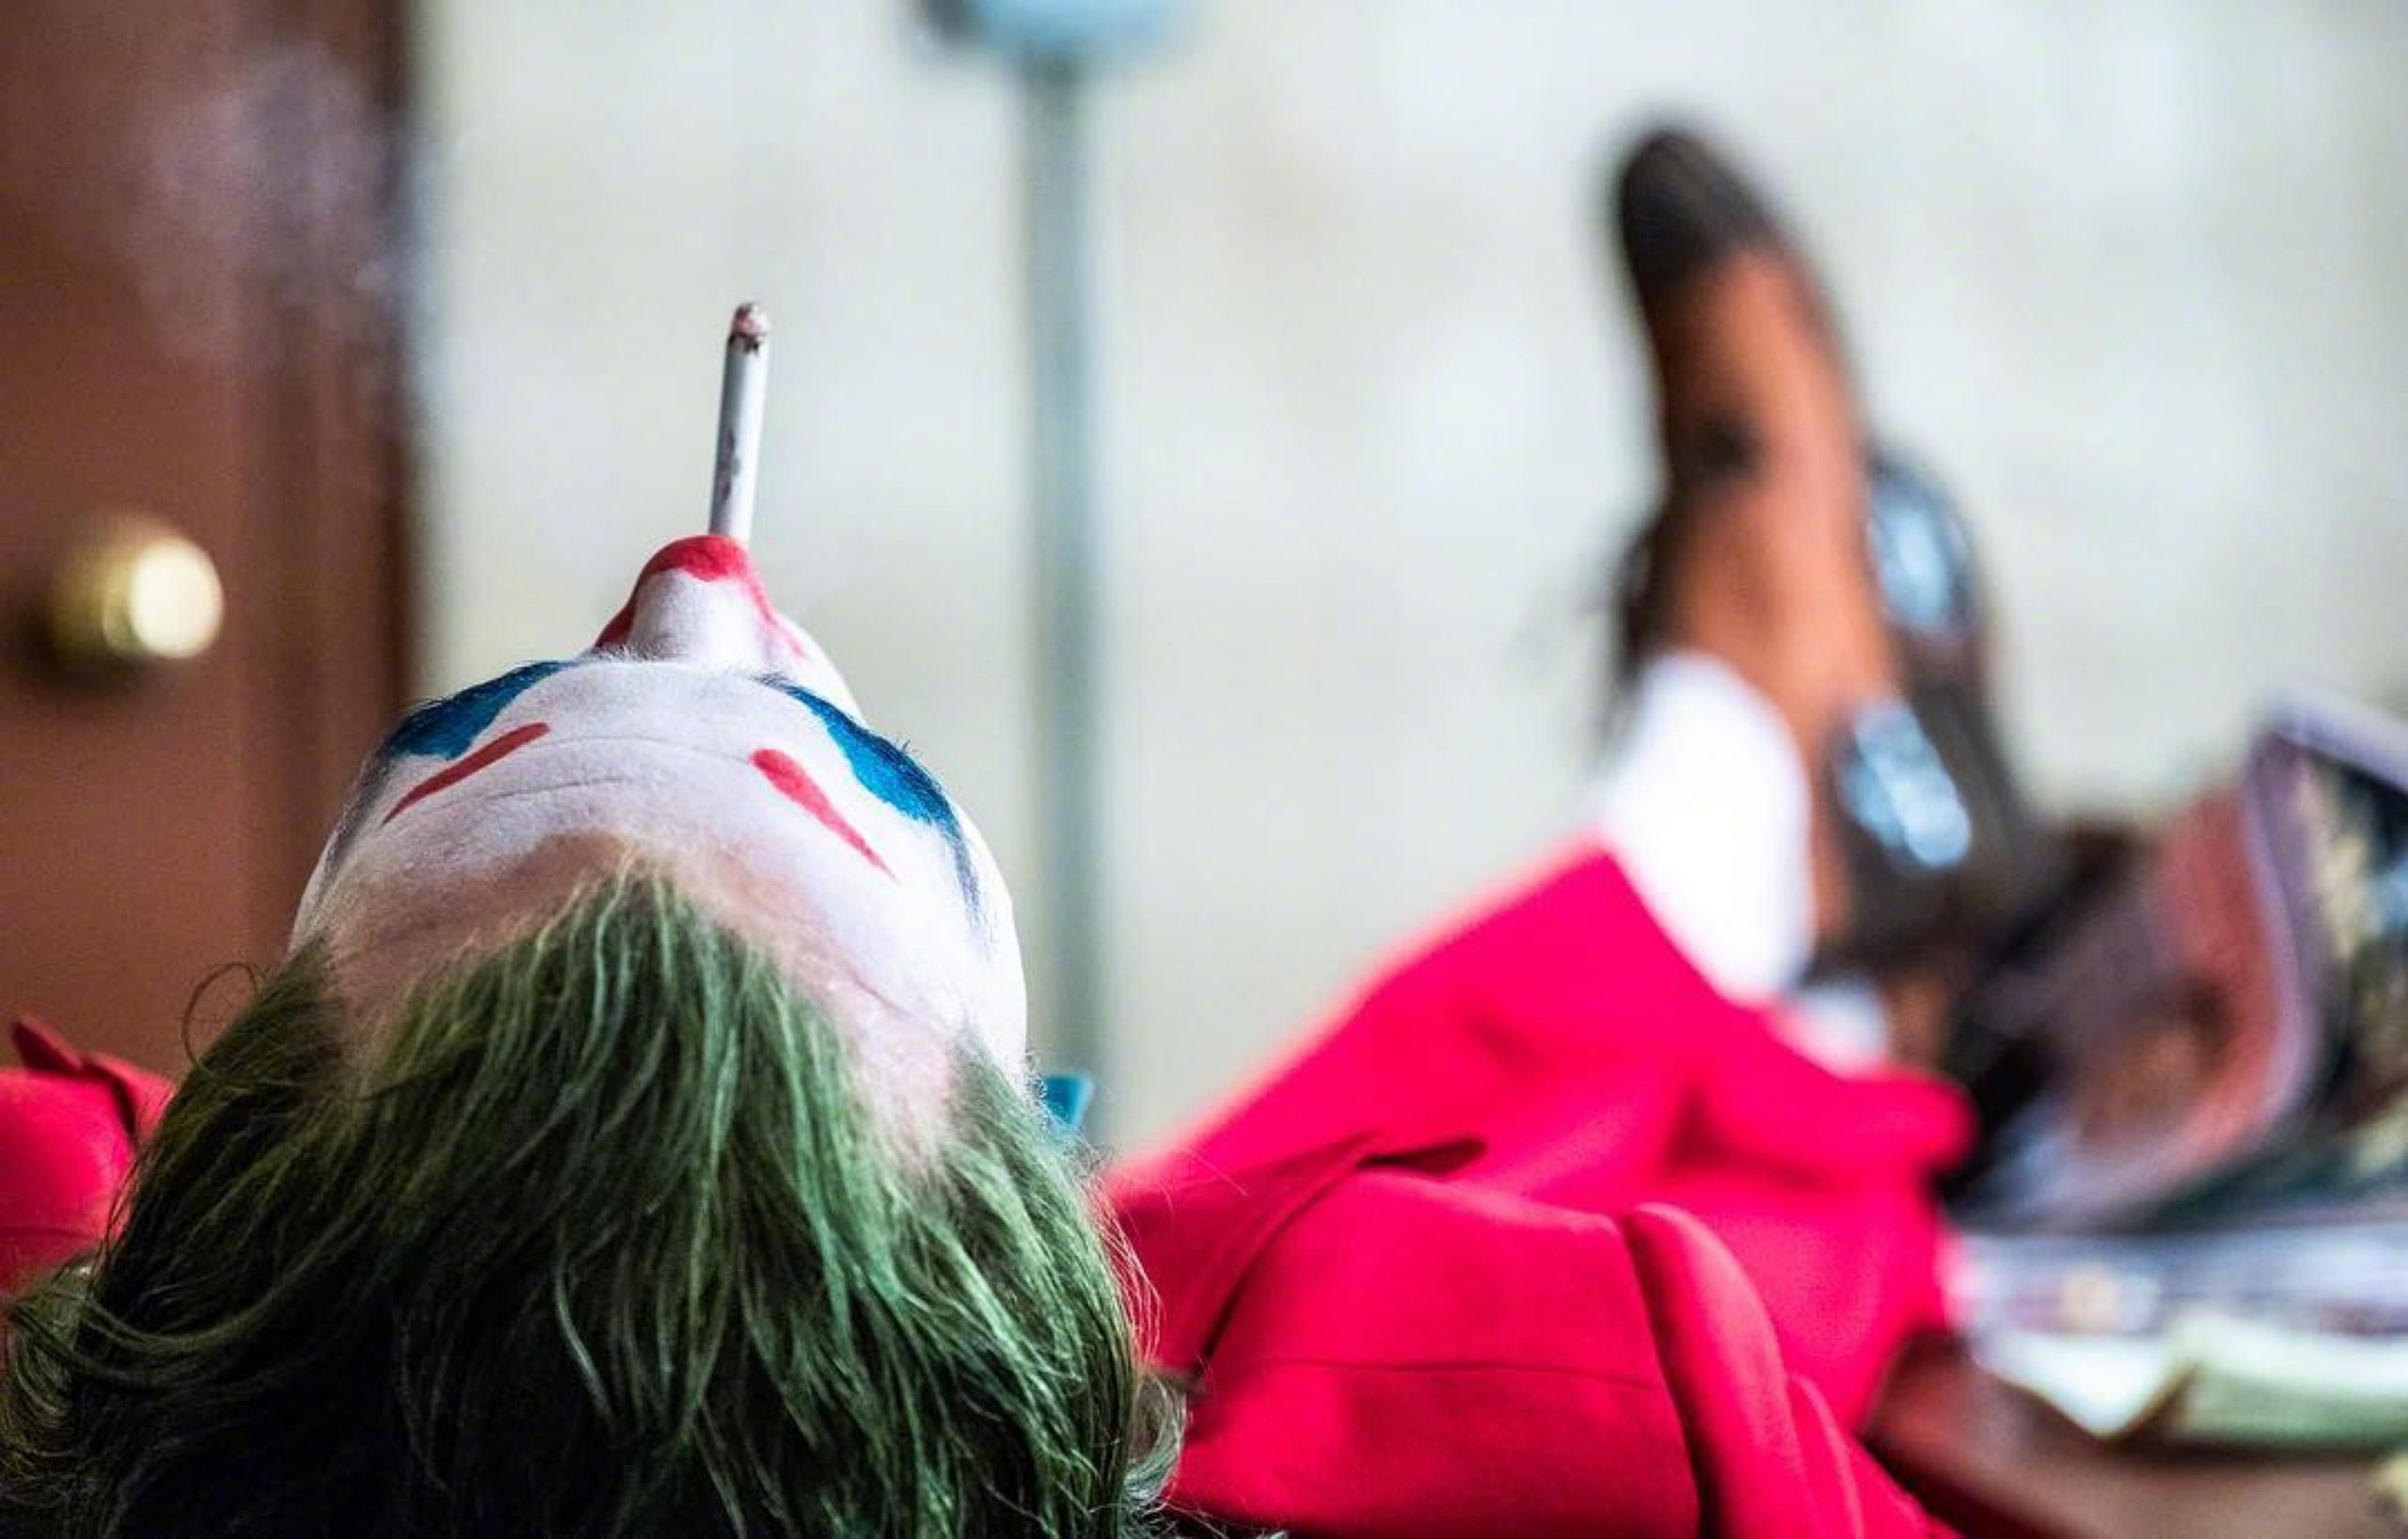 Joker 2019 Movie wallpaper